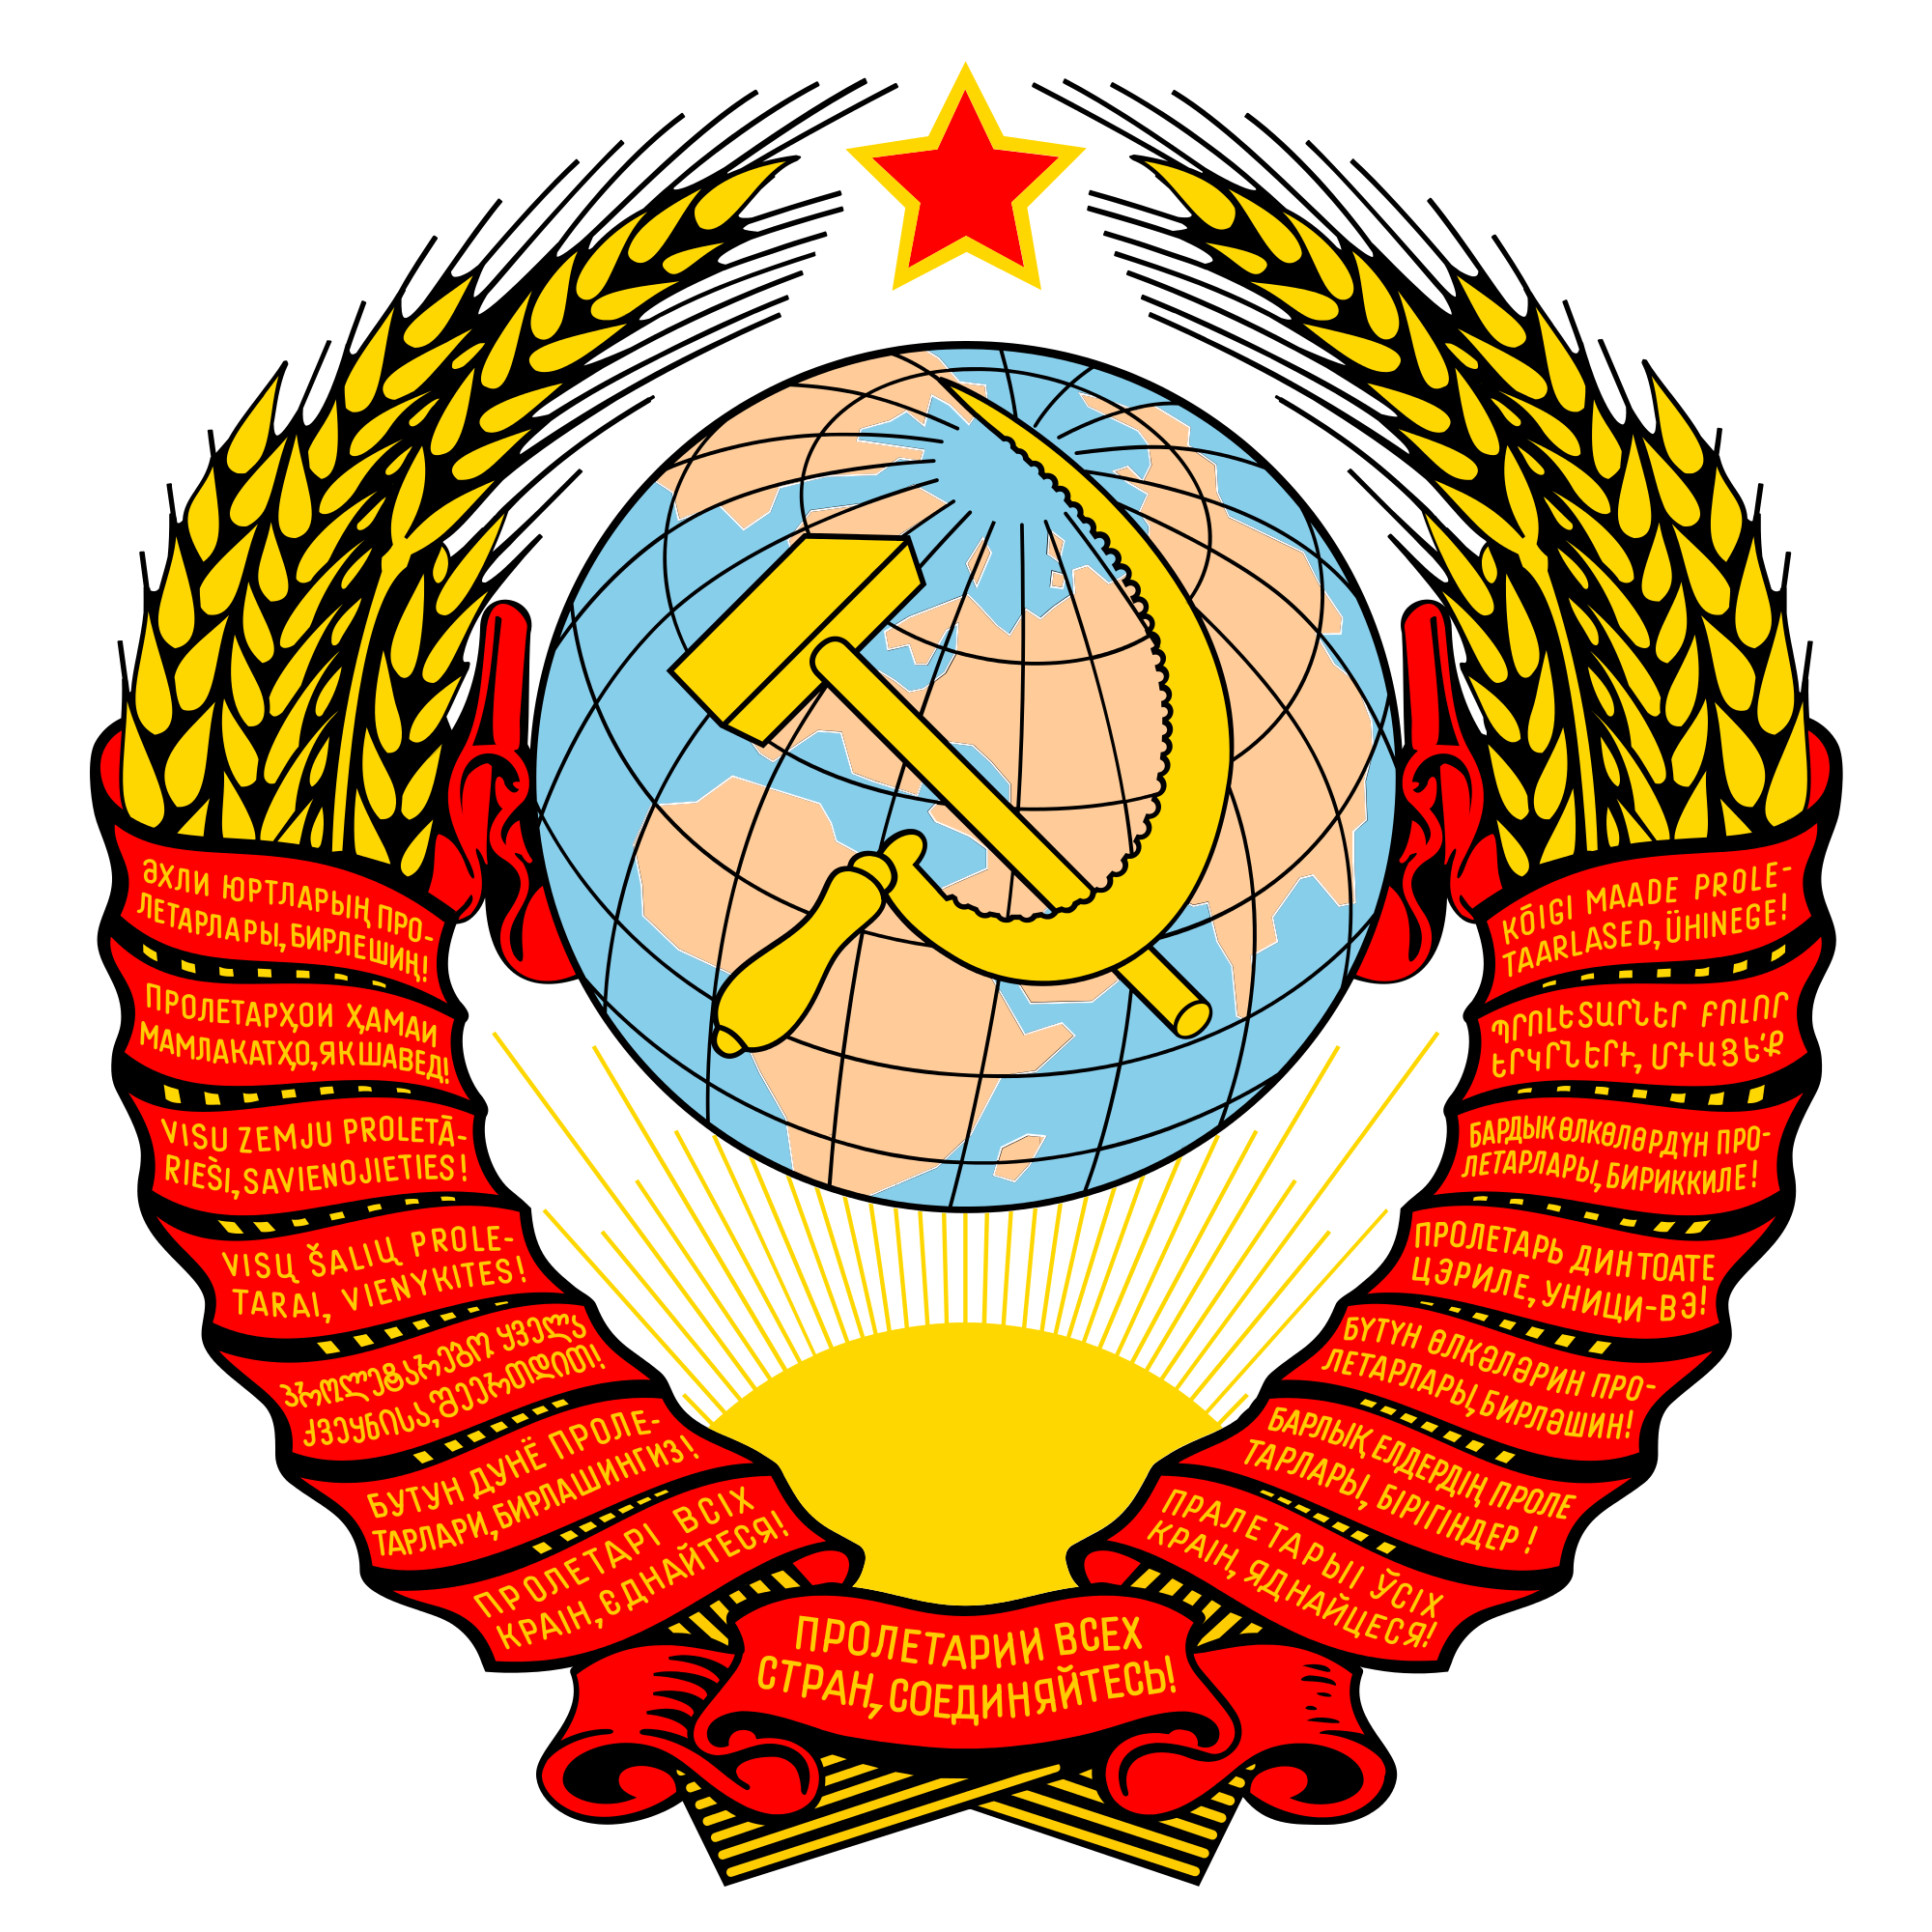 共产国际 标志图片